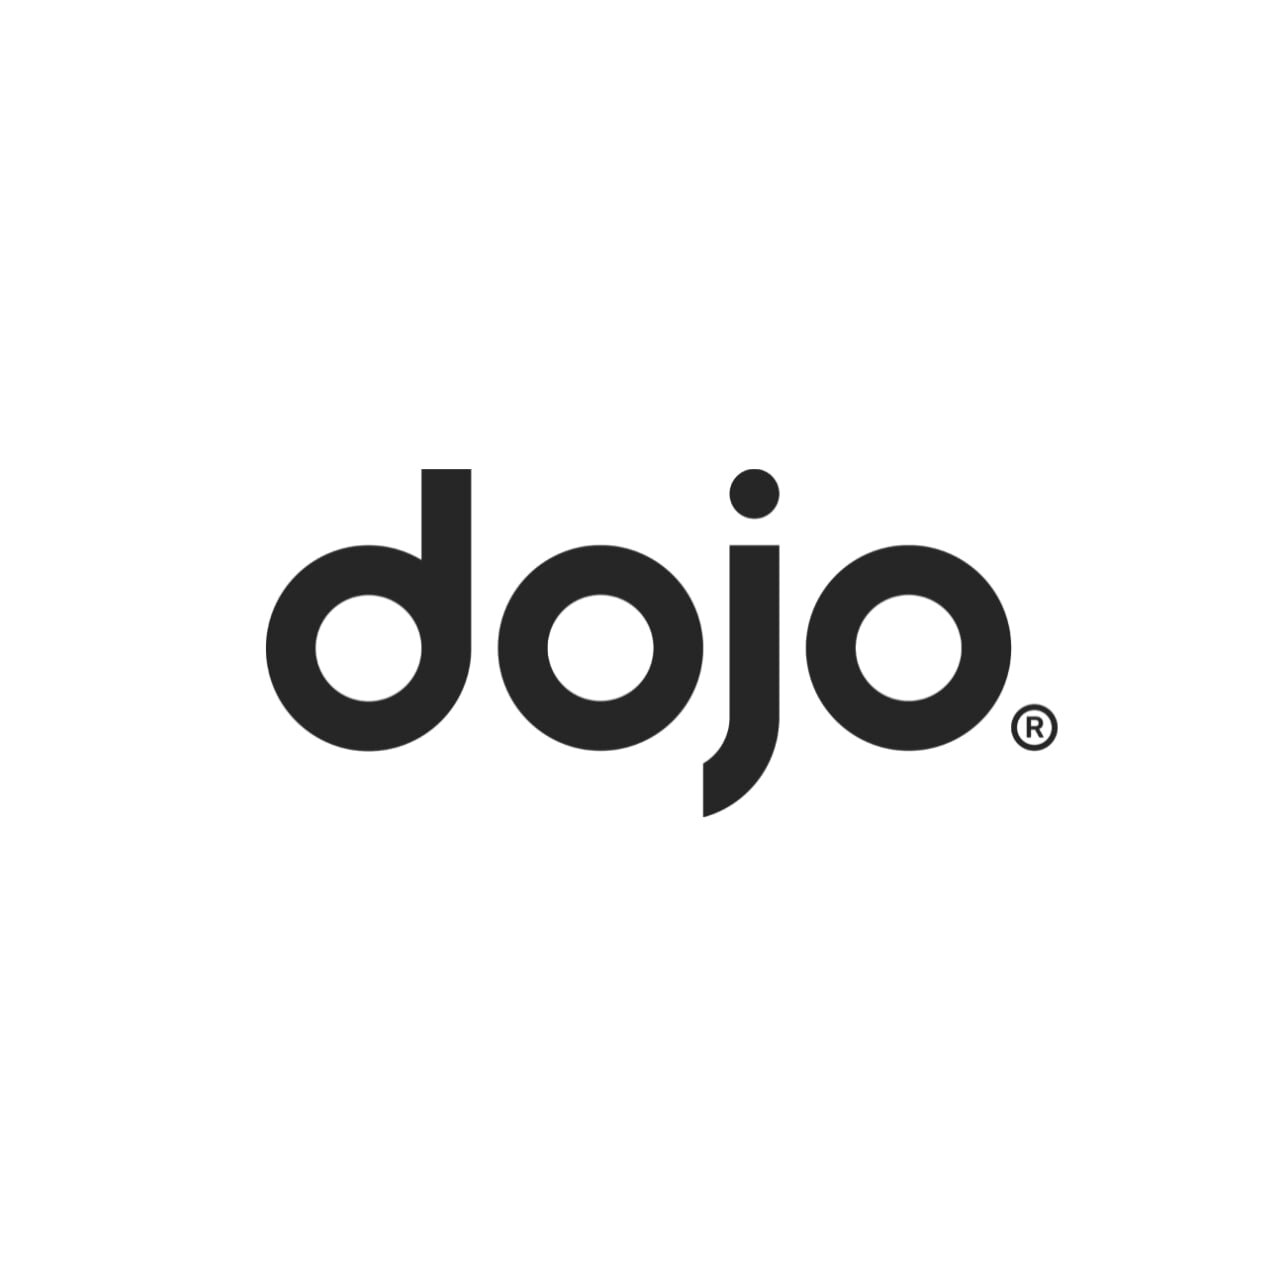 Dojo Logo.jpg